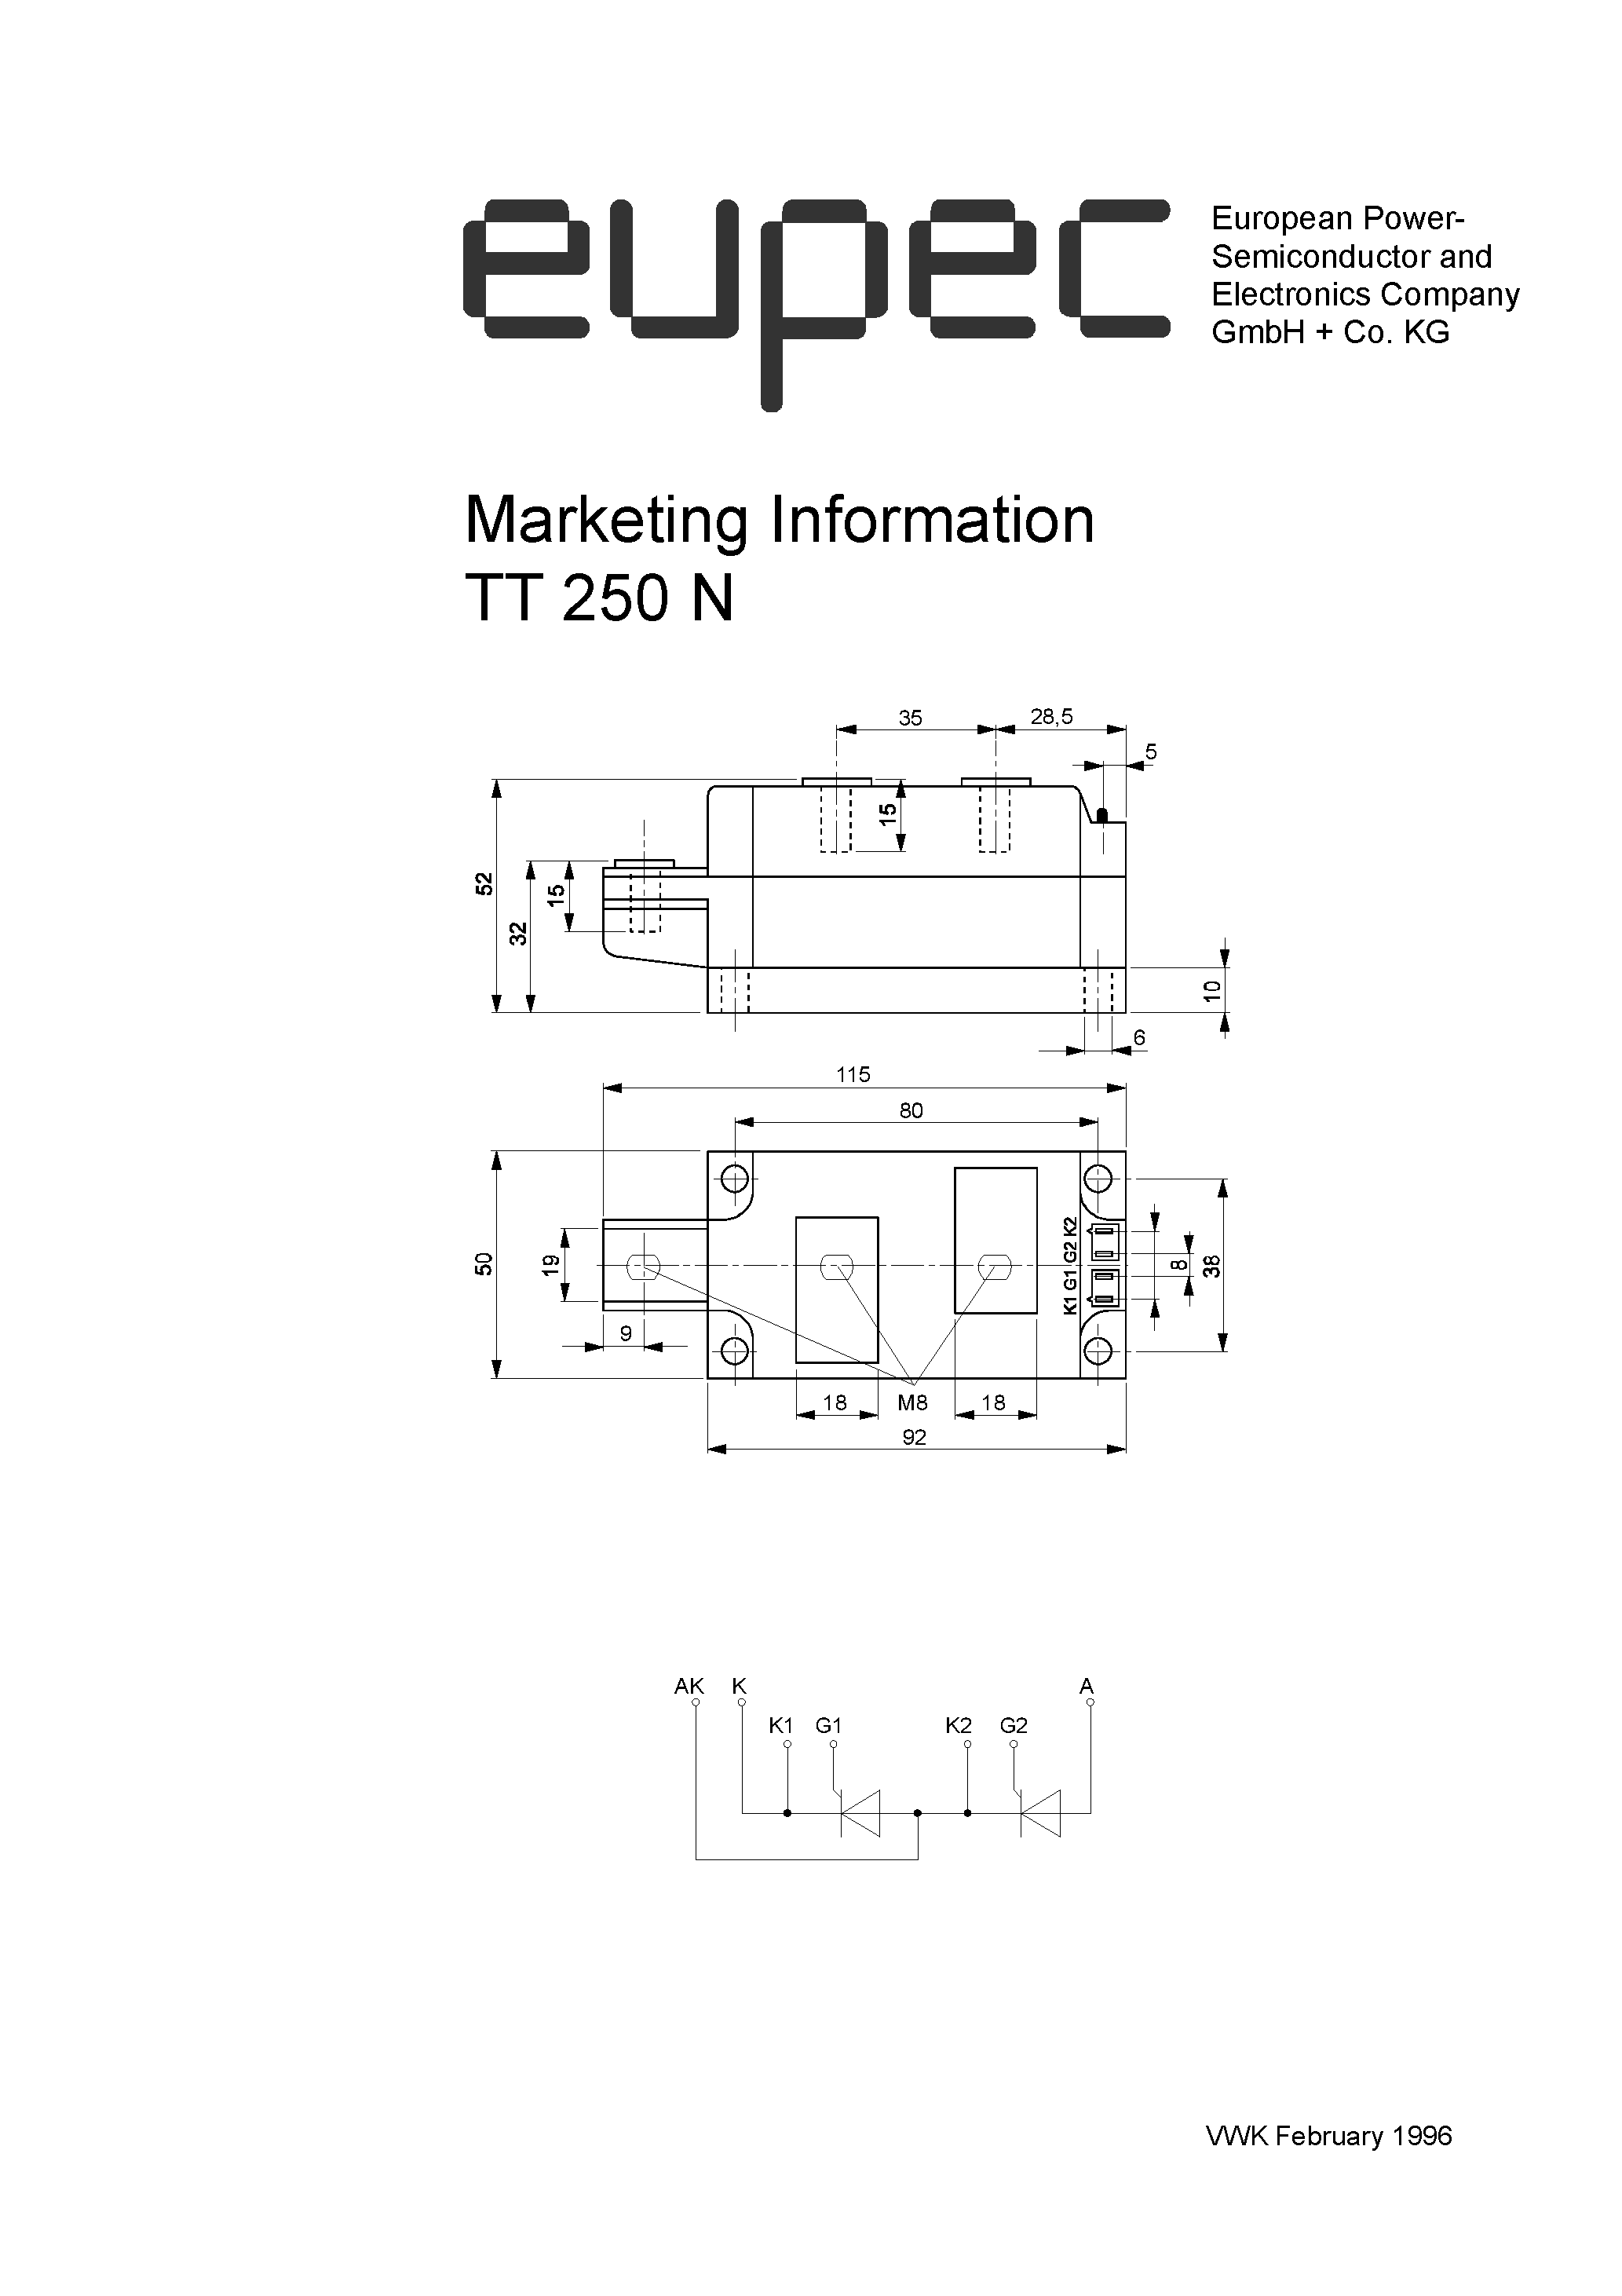 Datasheet TD250N - Marketing Information page 1